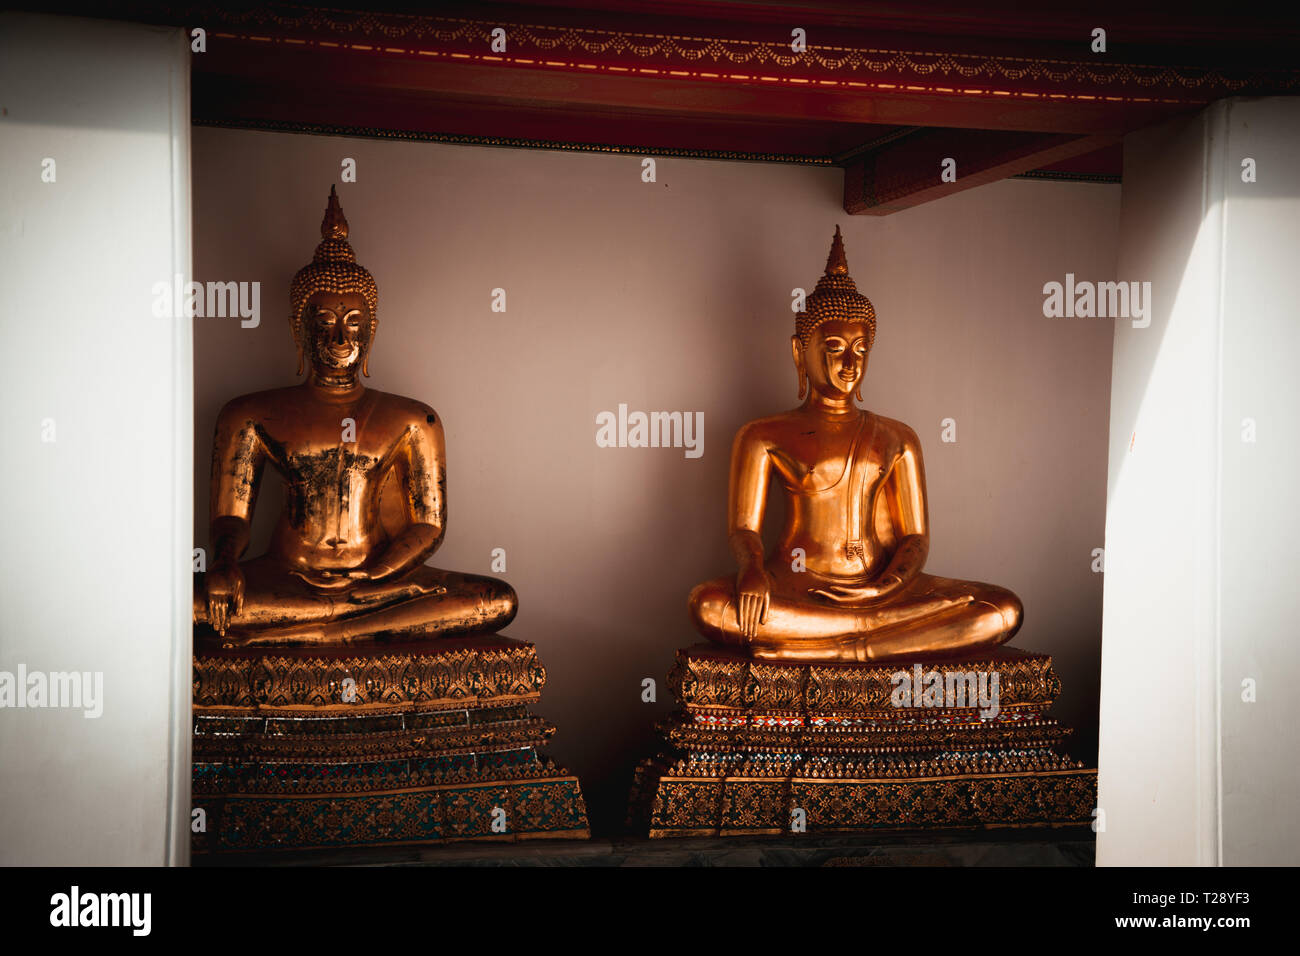 Le Wat Pho ou Wat Phra Chetuphon Vimolmangklararm Rajwaramahaviharn est l'un des plus anciens temples de Bangkok, il est sur l'île de Rattanakosin, directement au sud de t Banque D'Images